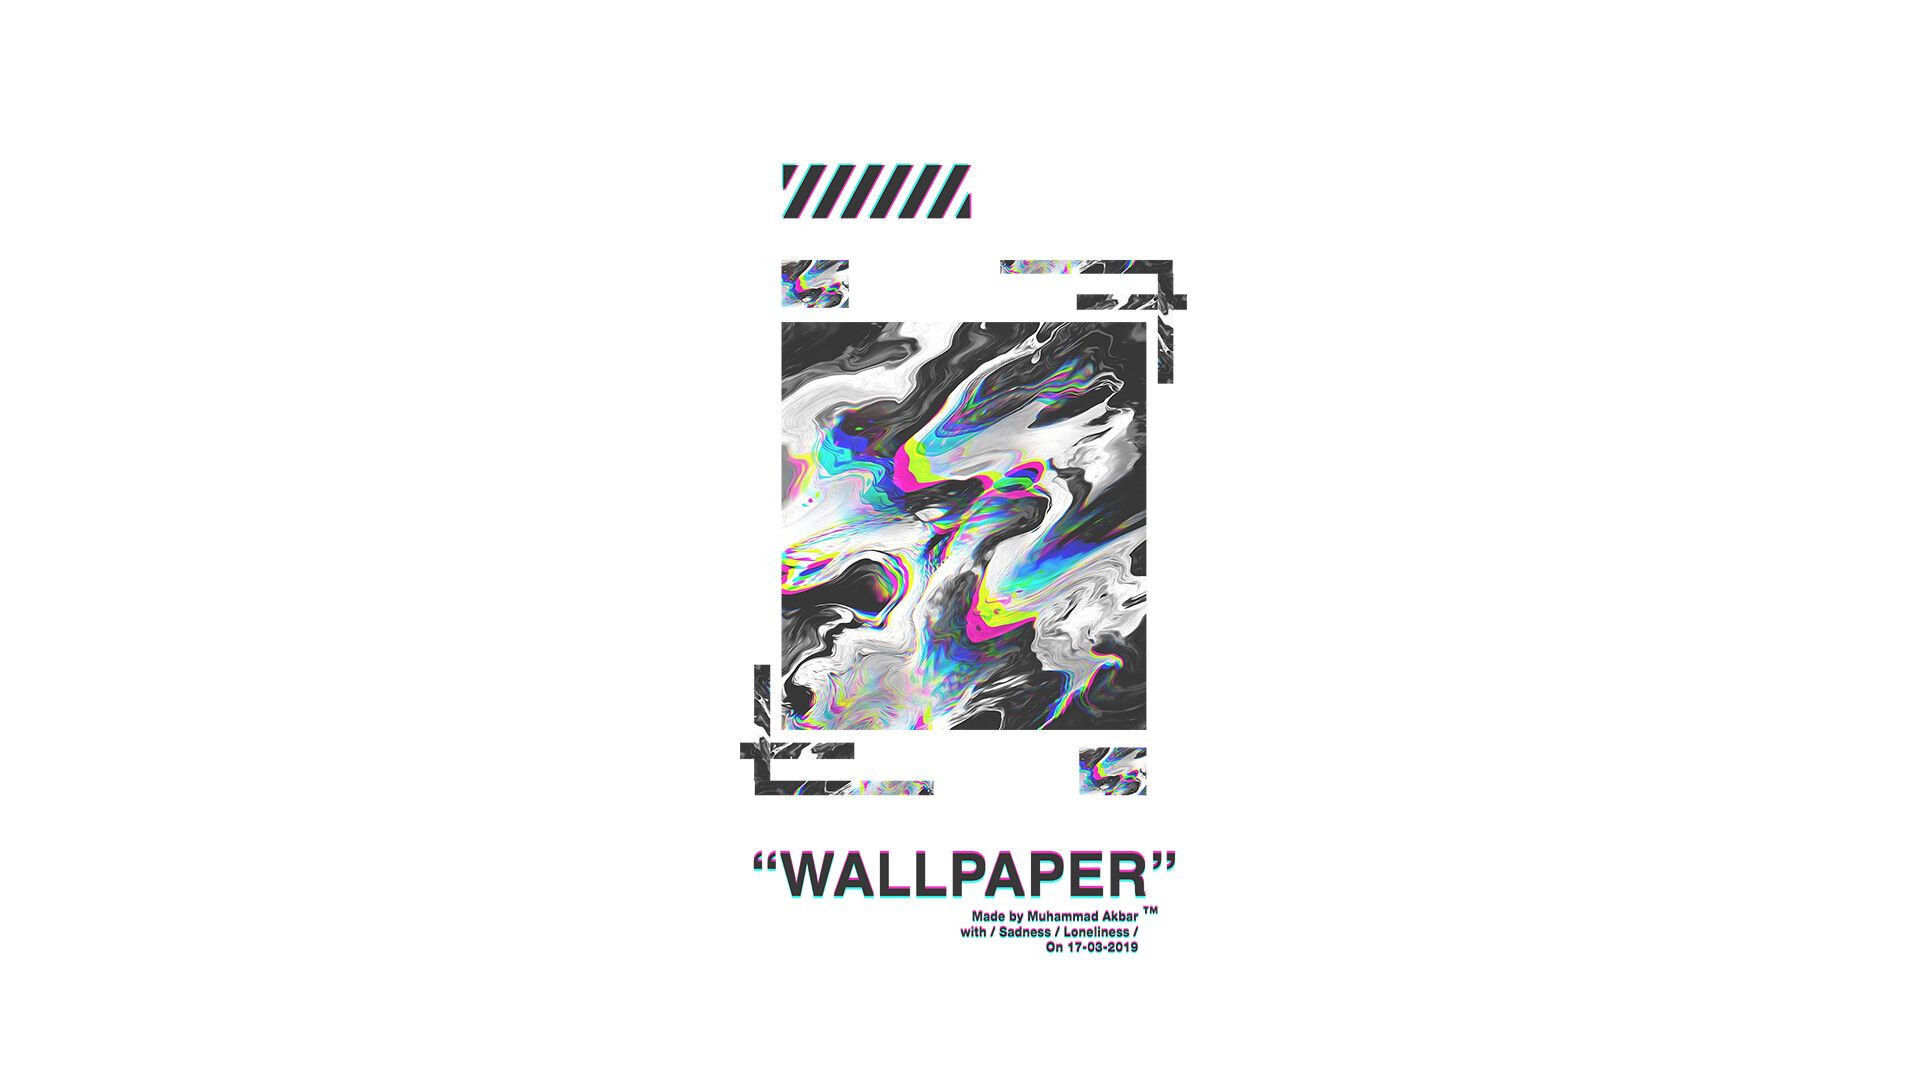 WALLPAPER X OFF WHITE™, akbar